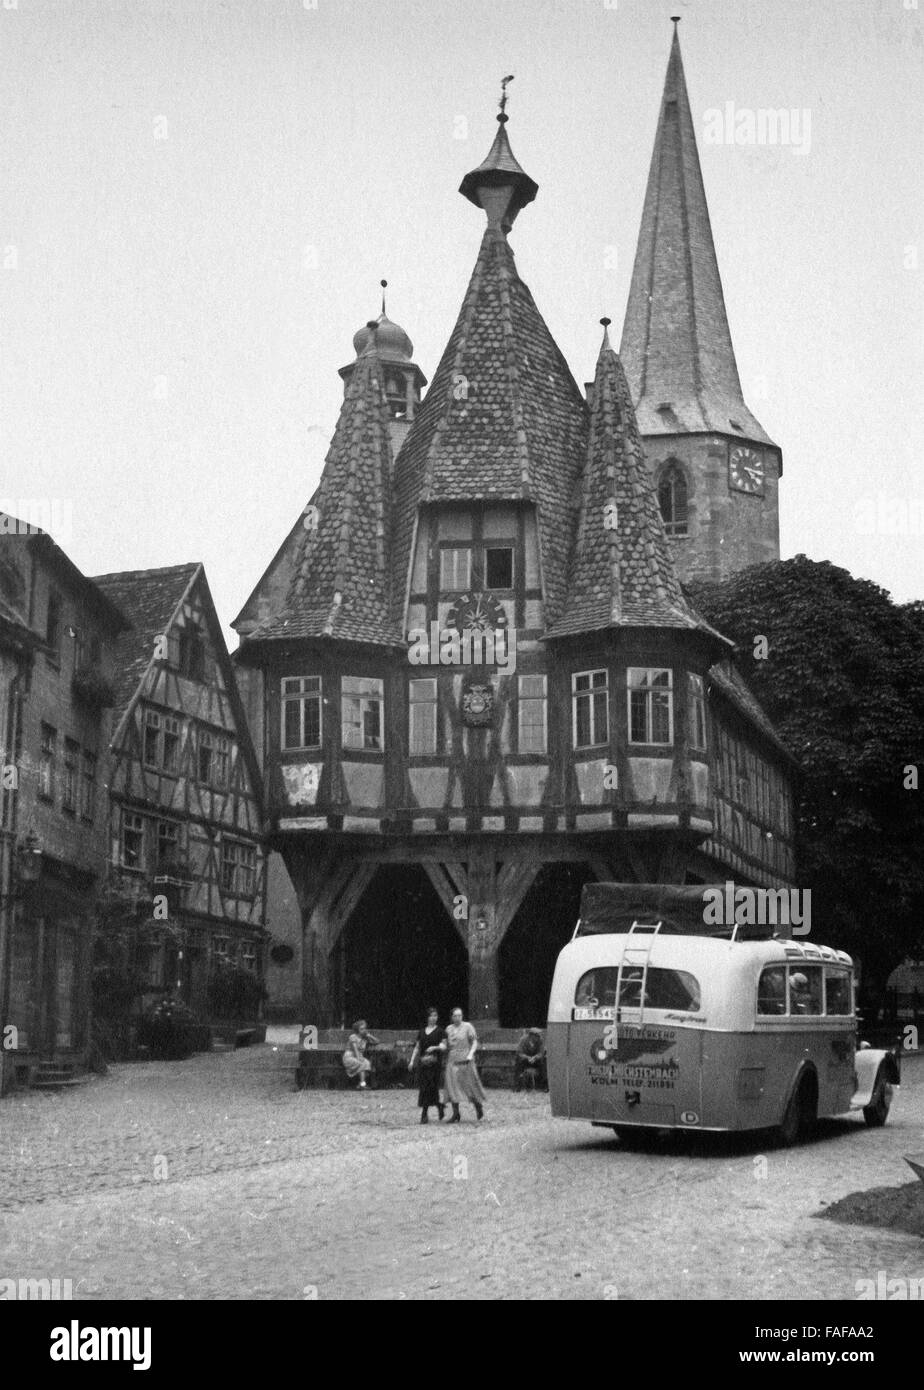 Rathaus und Kirche à Michelstadt im Odenwald mit Reisebus davor, Deutschland 1930er Jahre. Coach en face de la mairie et église à Michelstadt à la région de l'Odenwald, Allemagne 1930. Banque D'Images